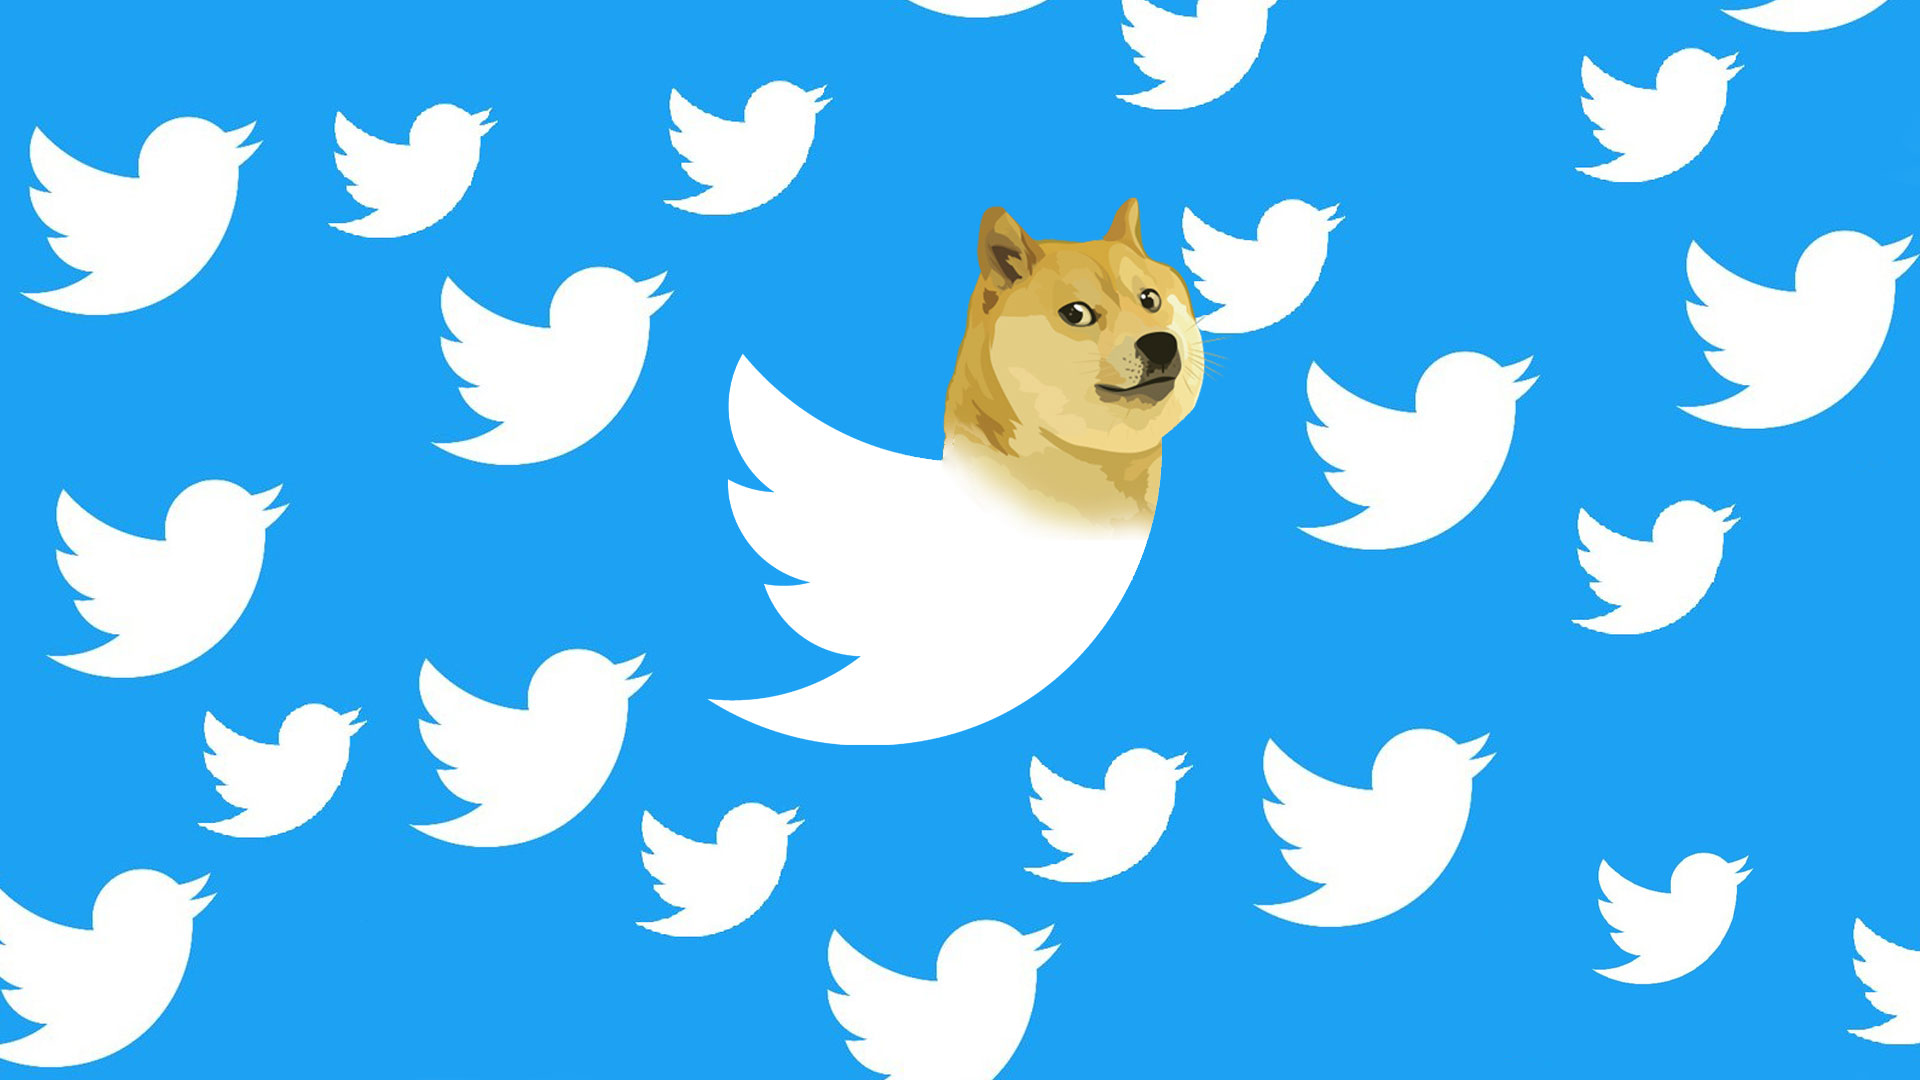 لوگو doge در توییتر